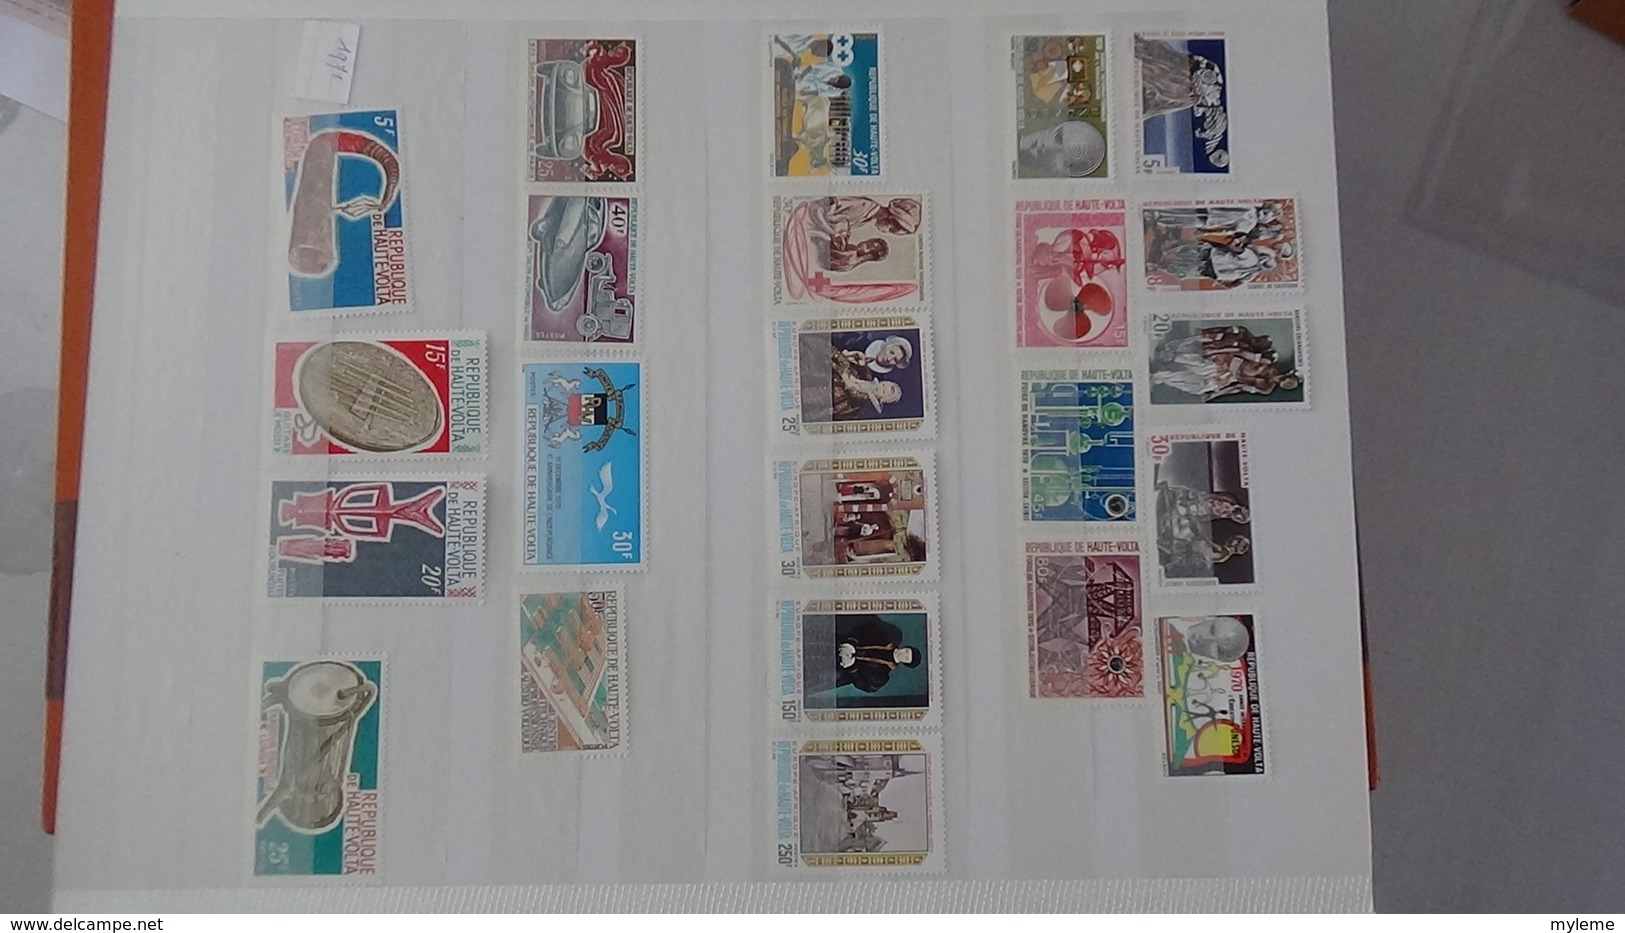 D15 Dispersion d'une très grosse collection de timbres et blocs ** dont Gabon, Guinée, Haute Volta. Voir commentair